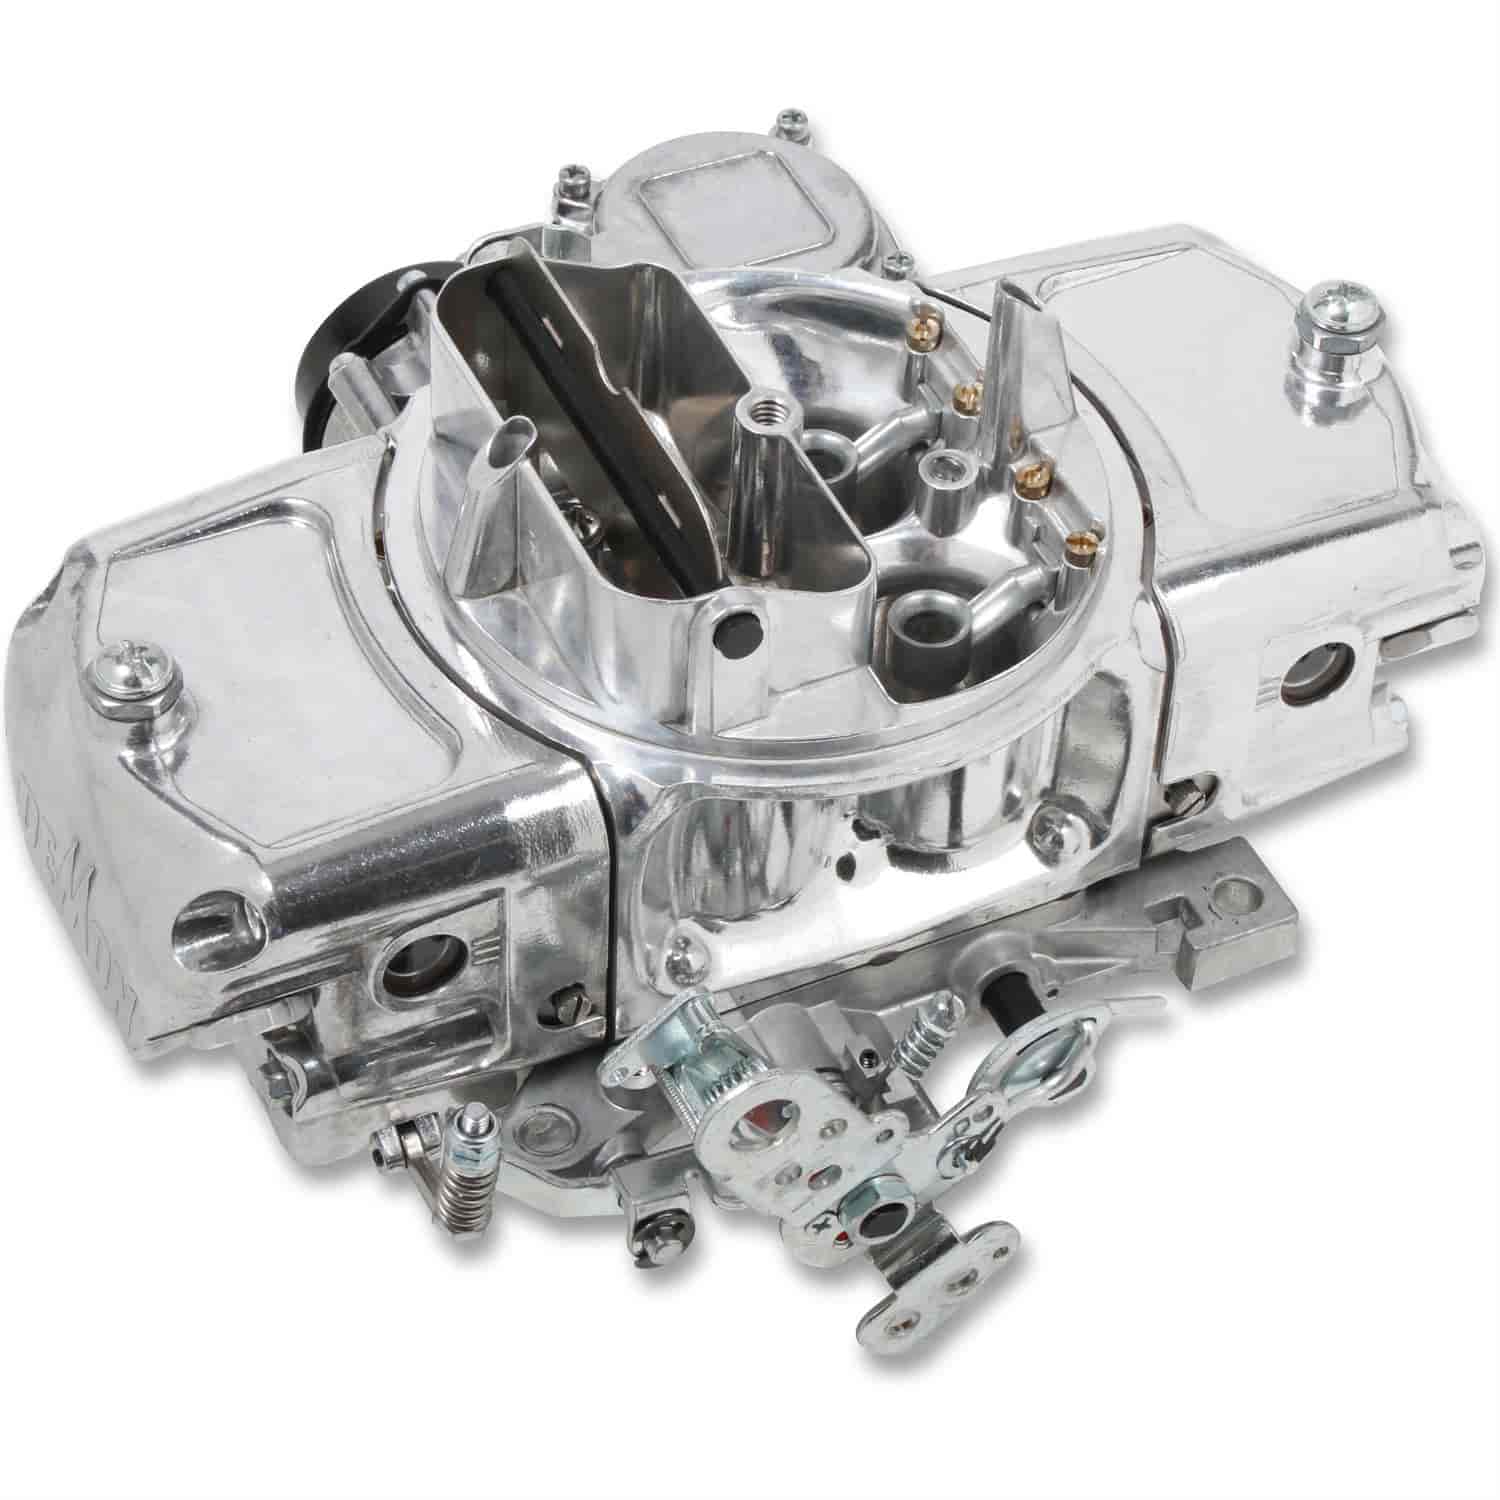 650 CFM Road Demon Carburetor [Electric Choke, Vacuum